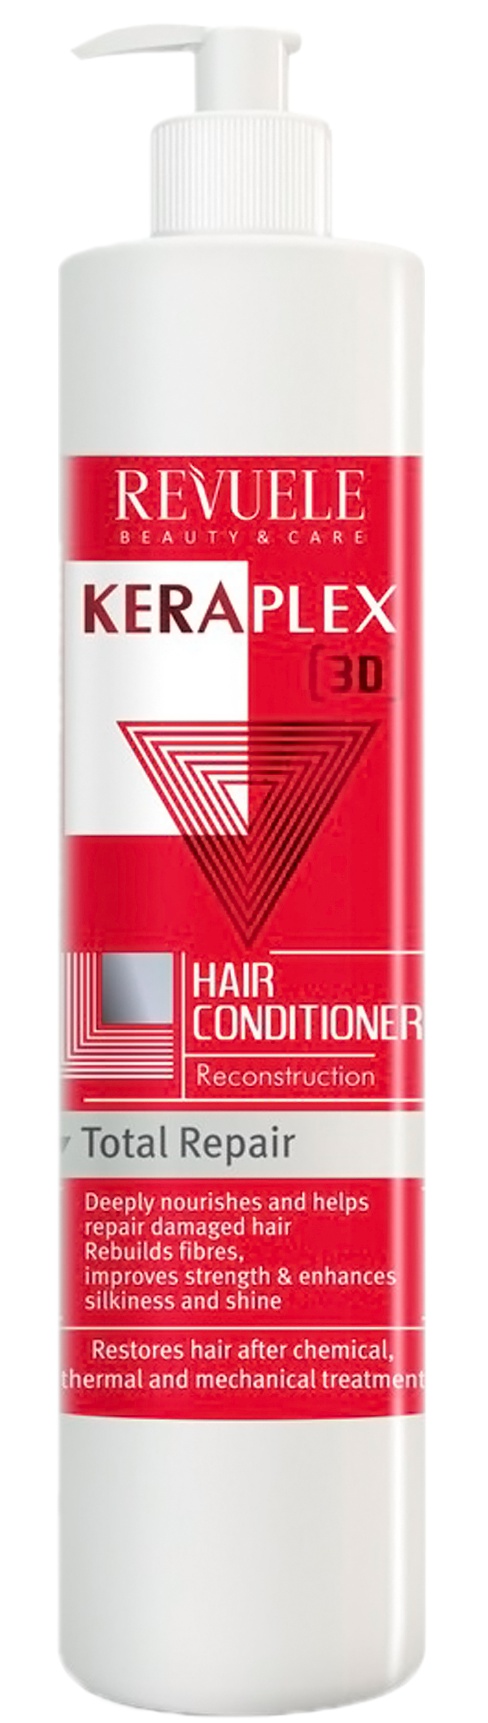 Revuele Keraplex Total Repair Hair Conditioner